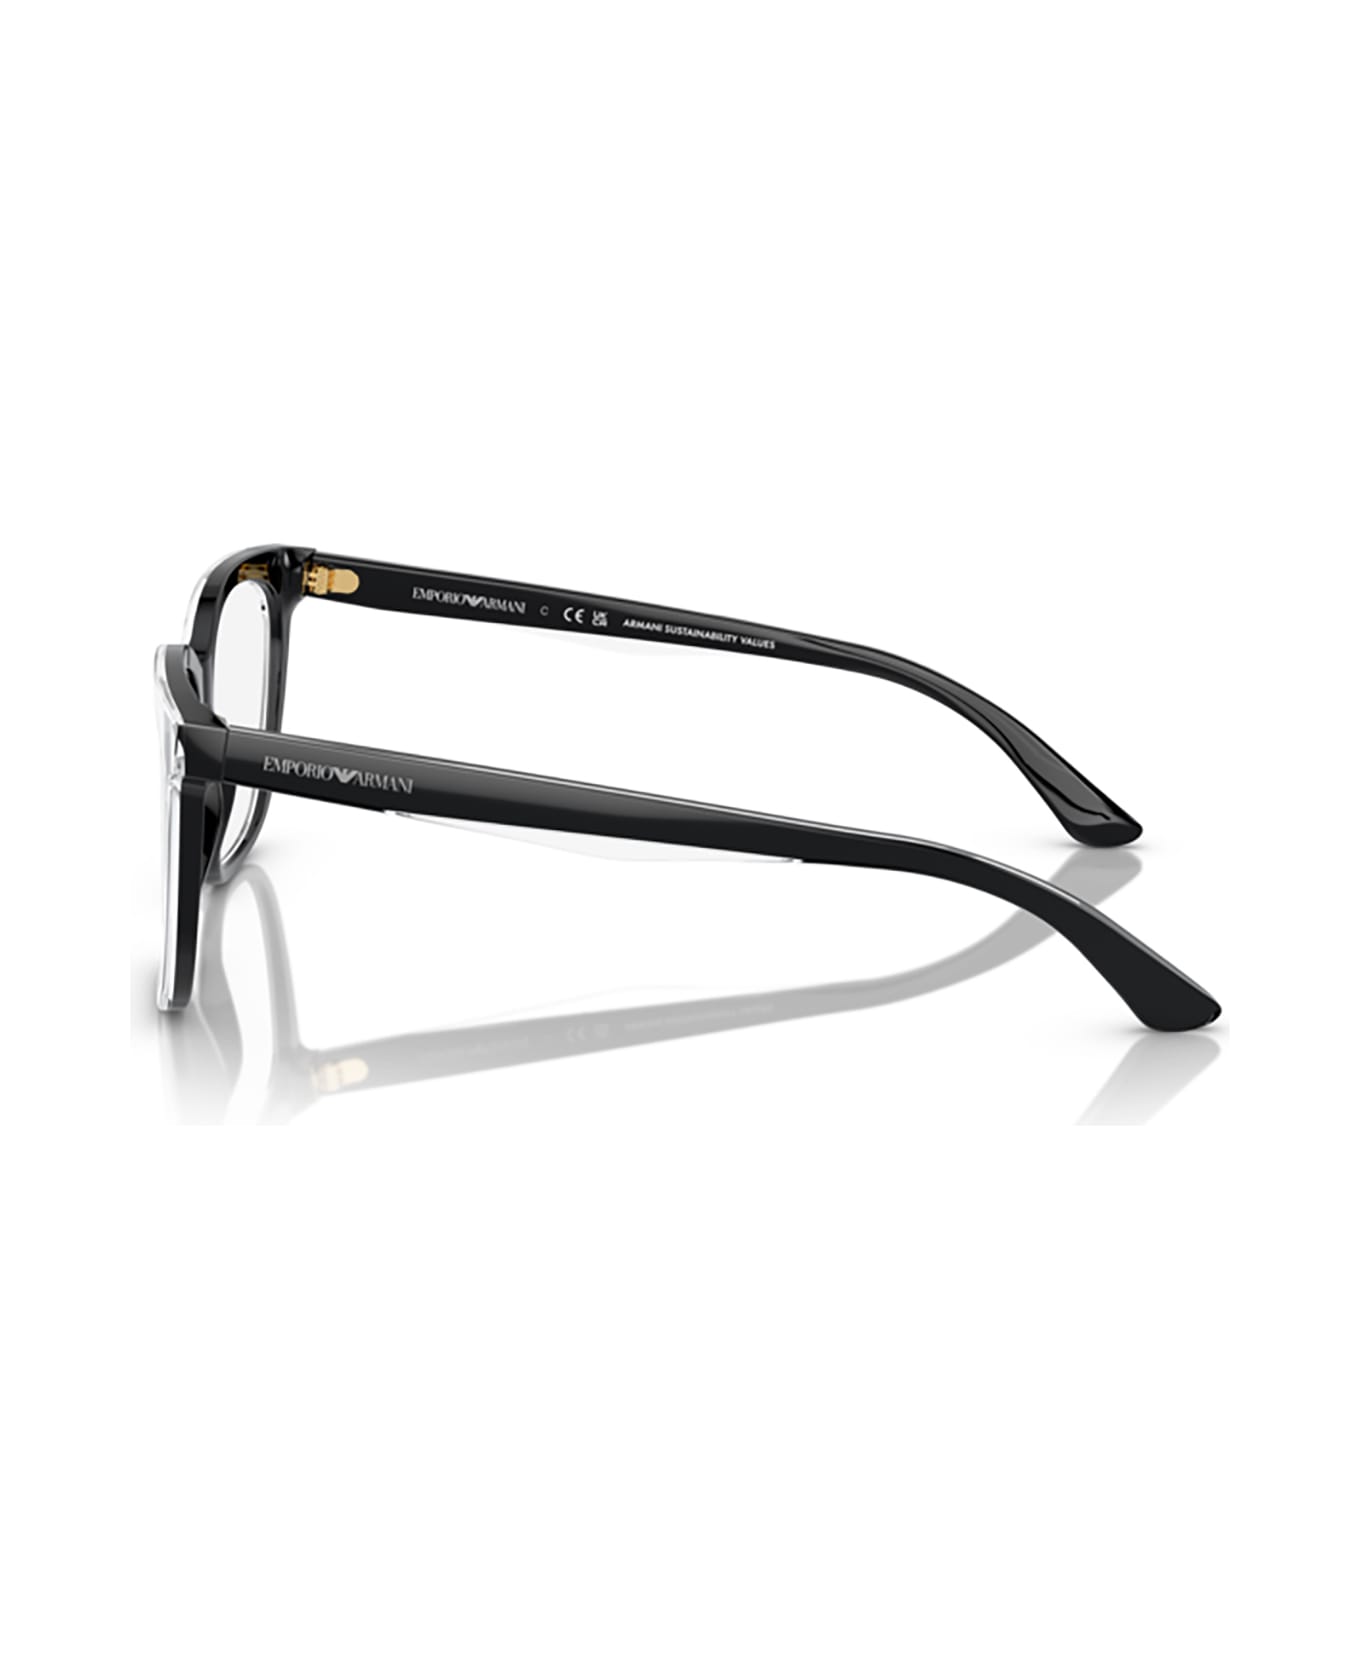 Emporio Armani Ea3228 Shiny Black / Top Crystal Glasses - Shiny Black / Top Crystal アイウェア